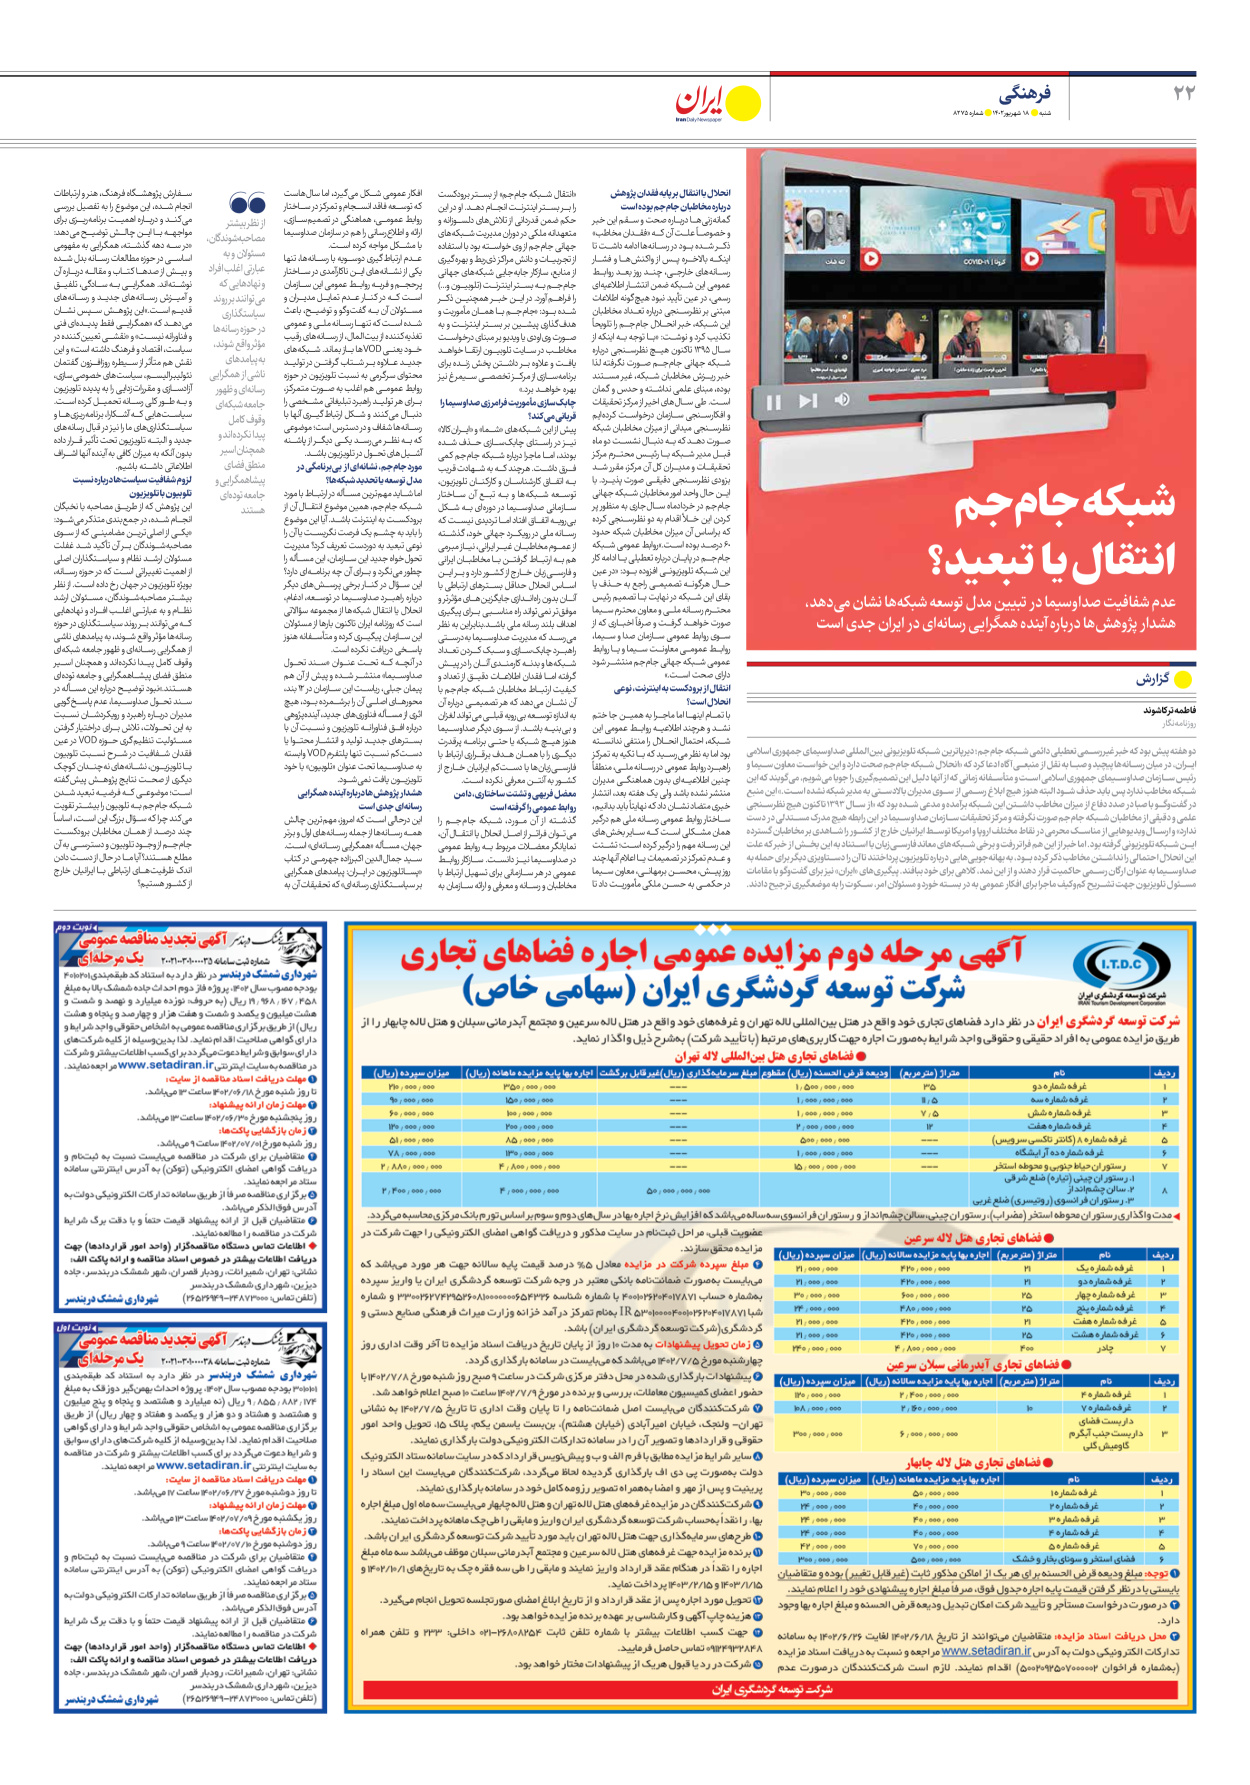 روزنامه ایران - شماره هشت هزار و دویست و هفتاد و پنج - ۱۸ شهریور ۱۴۰۲ - صفحه ۲۲